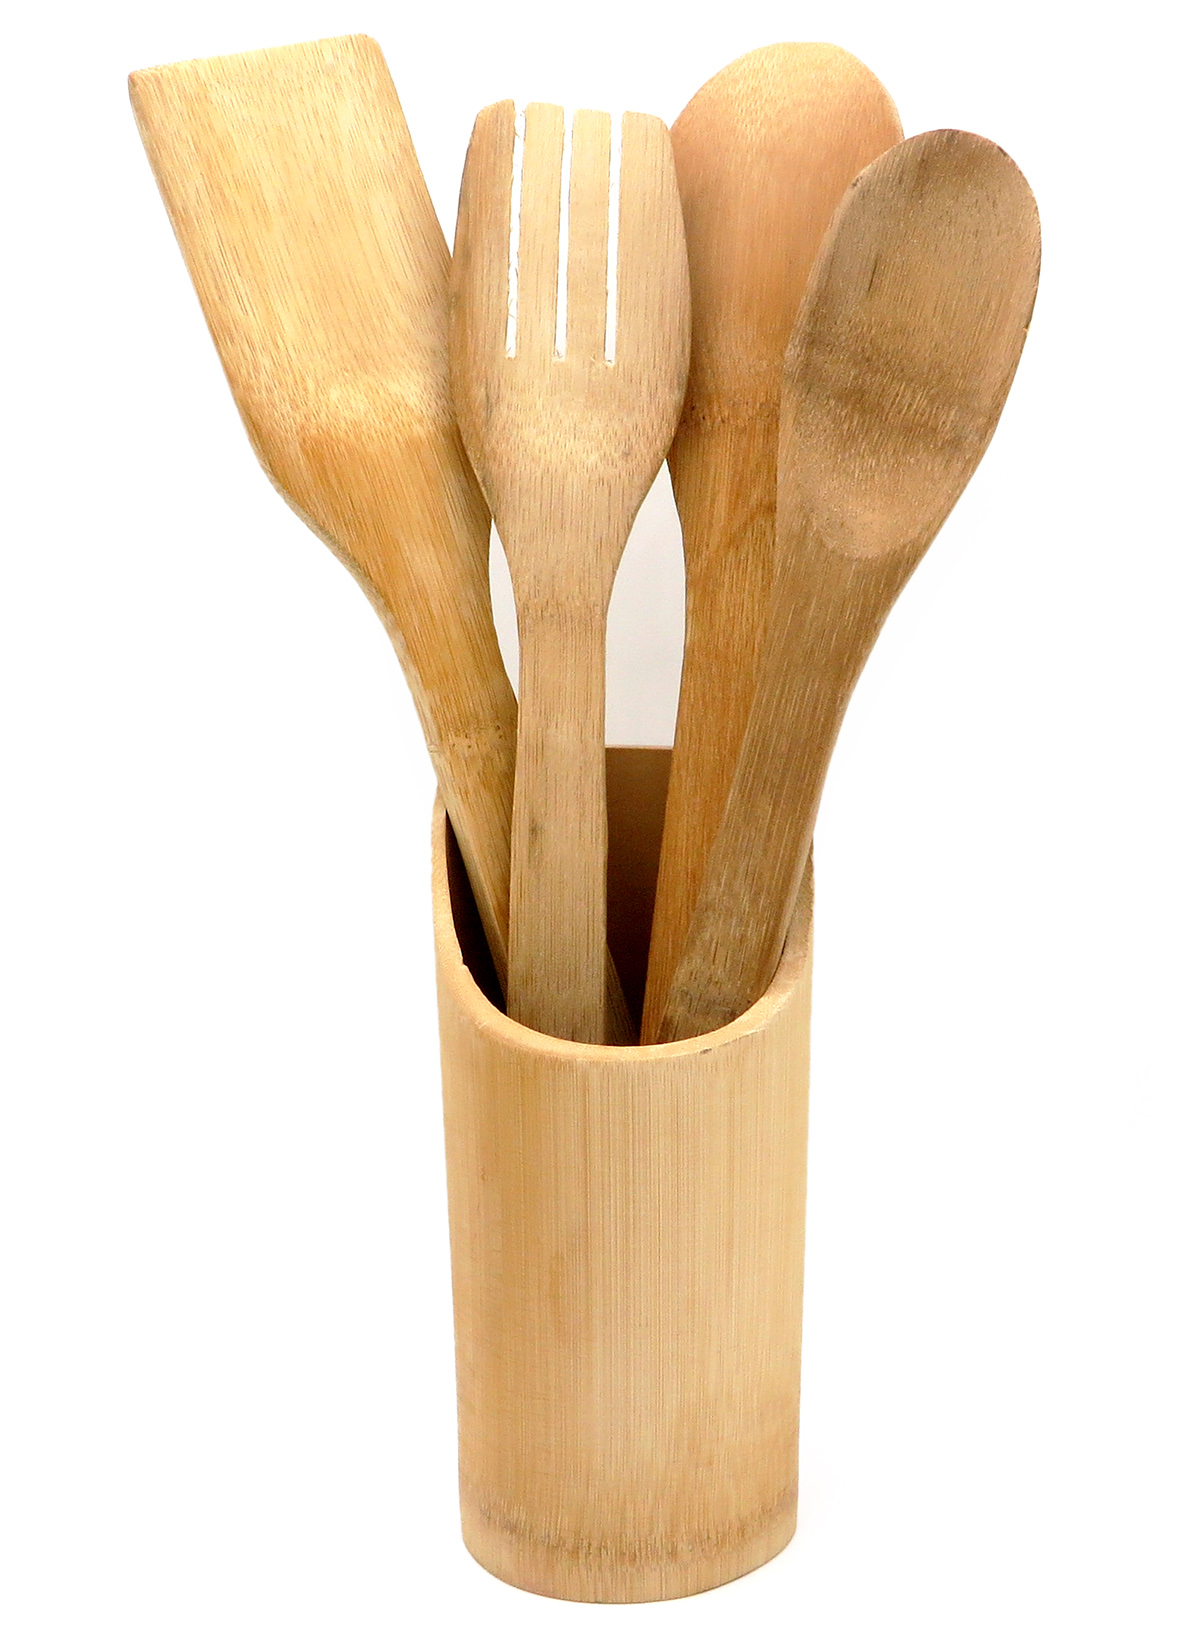 Bandeja Cocina de Bambu Reciclado, Diseño de Madera, Utensilios